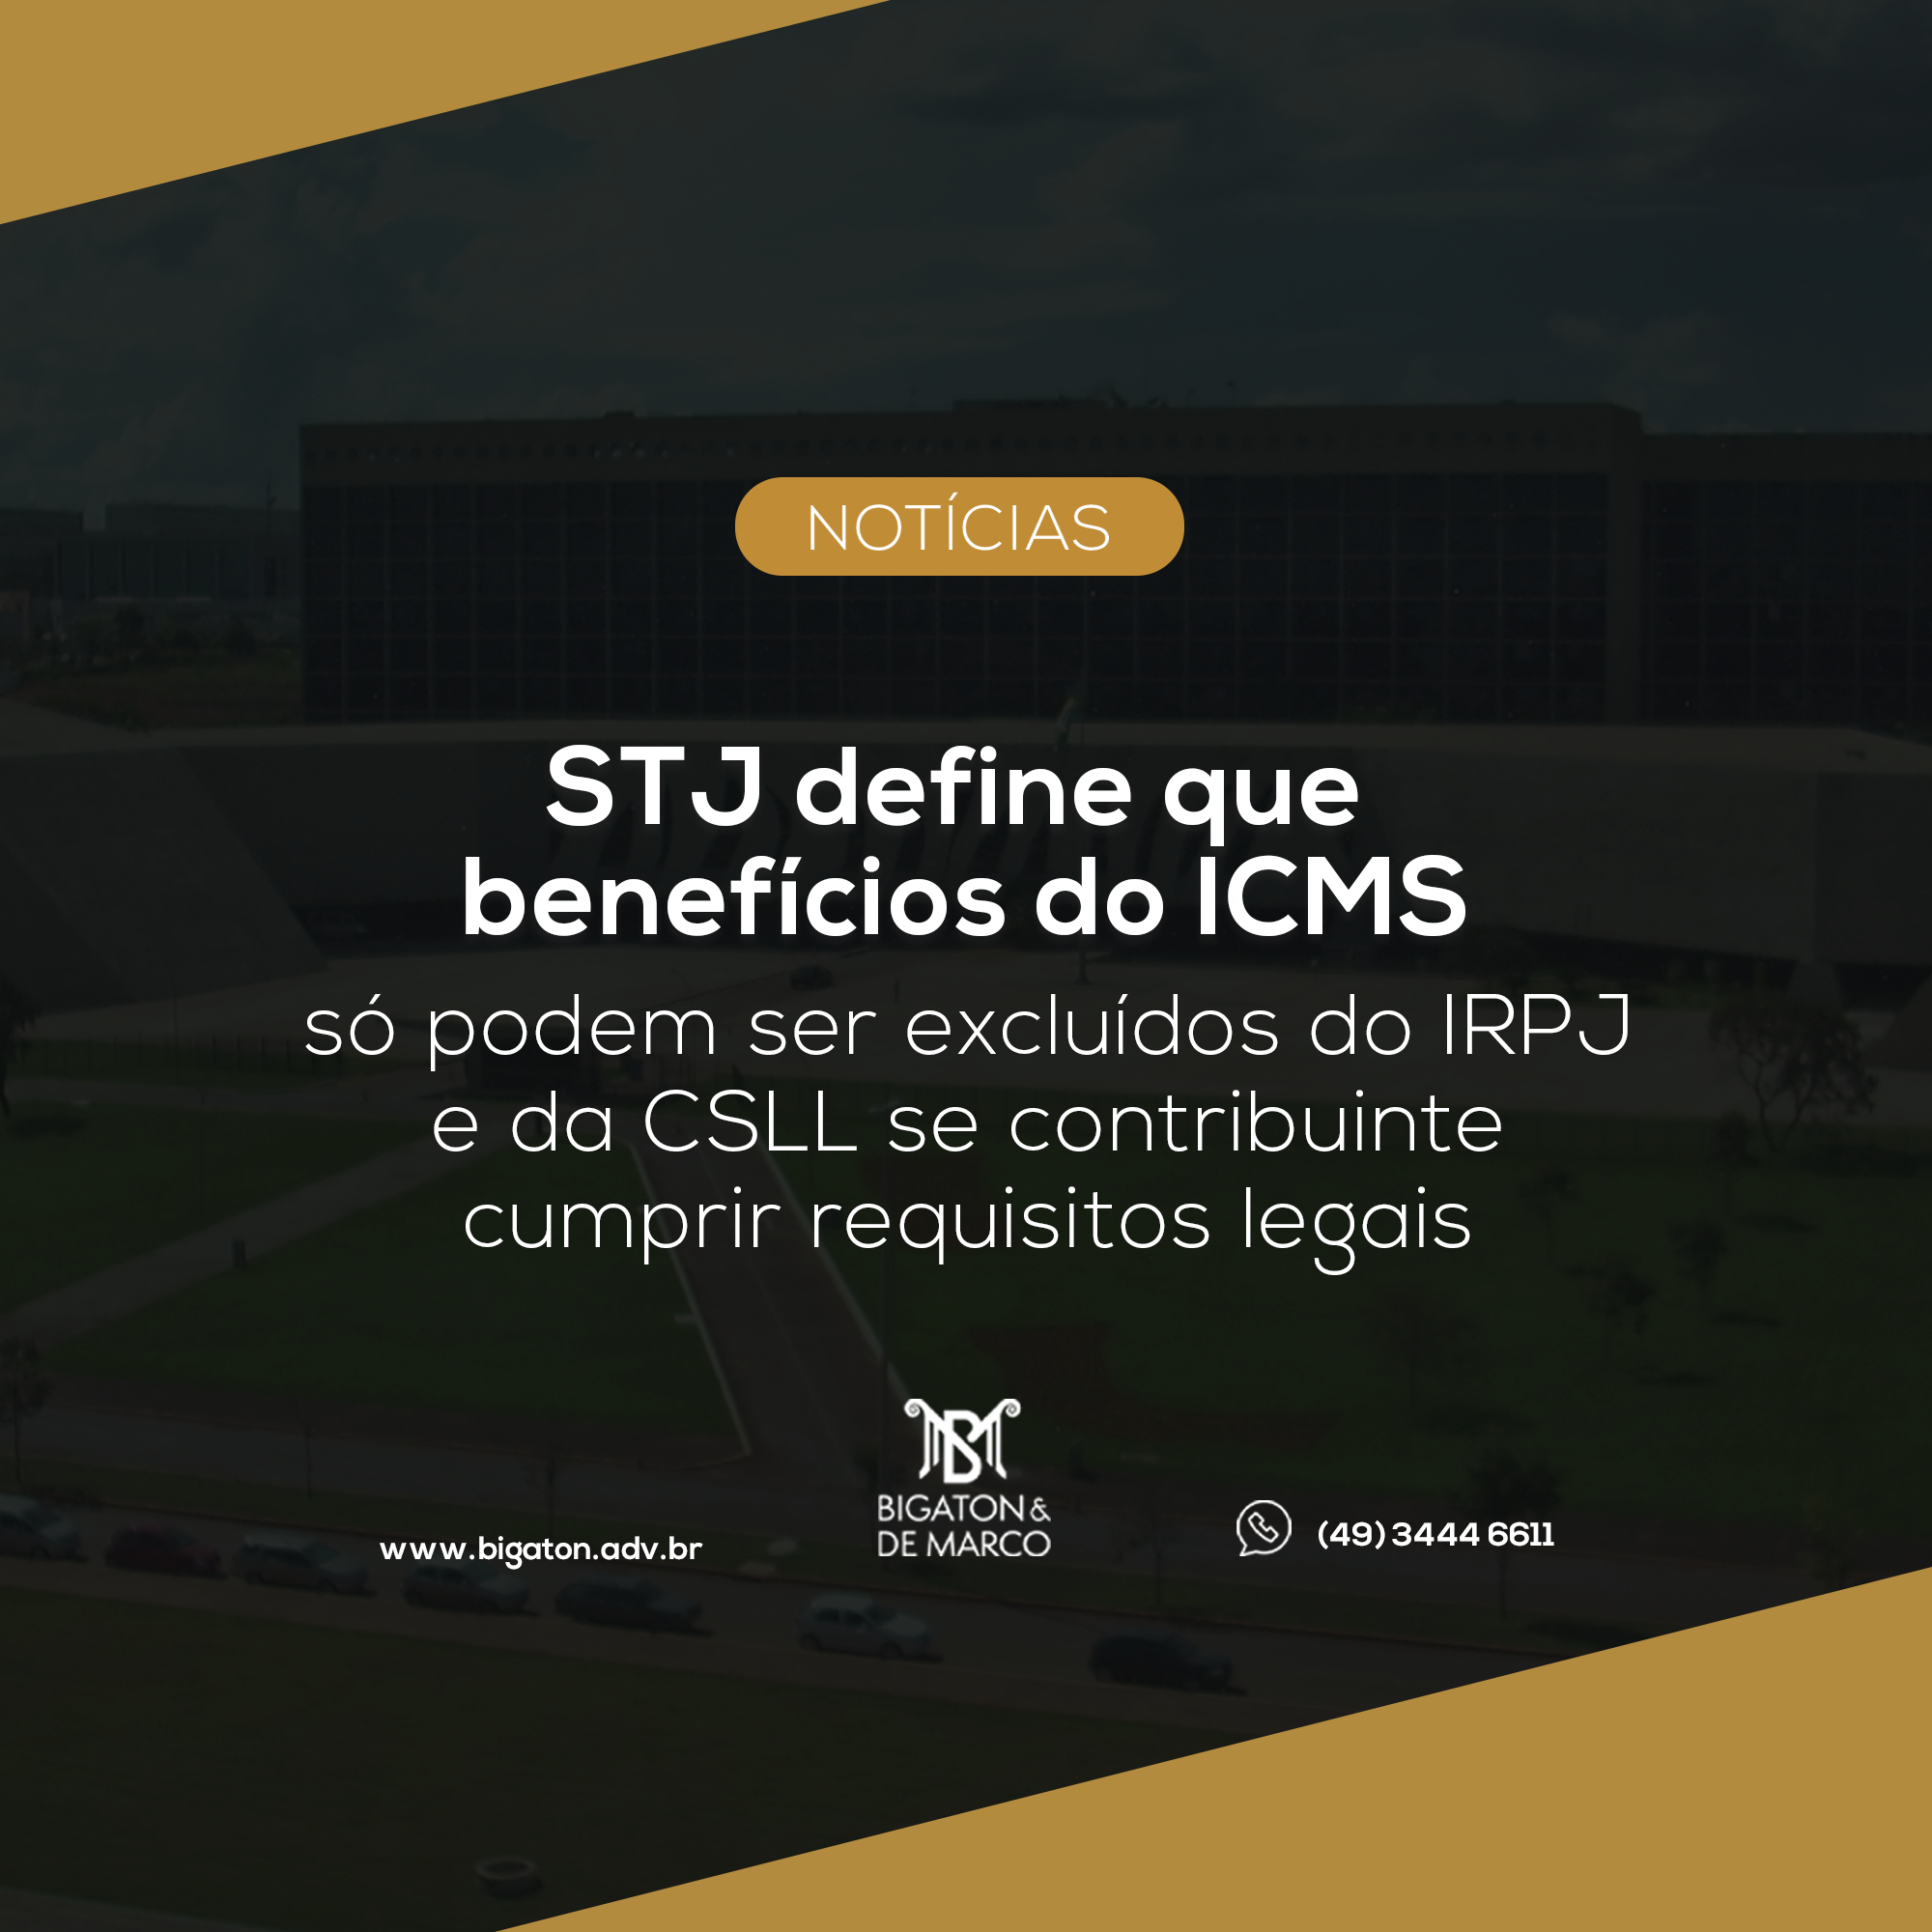 Benefícios do ICMS só podem ser excluídos do IRPJ e da CSLL se contribuinte cumprir requisitos legais, define Primeira Seção